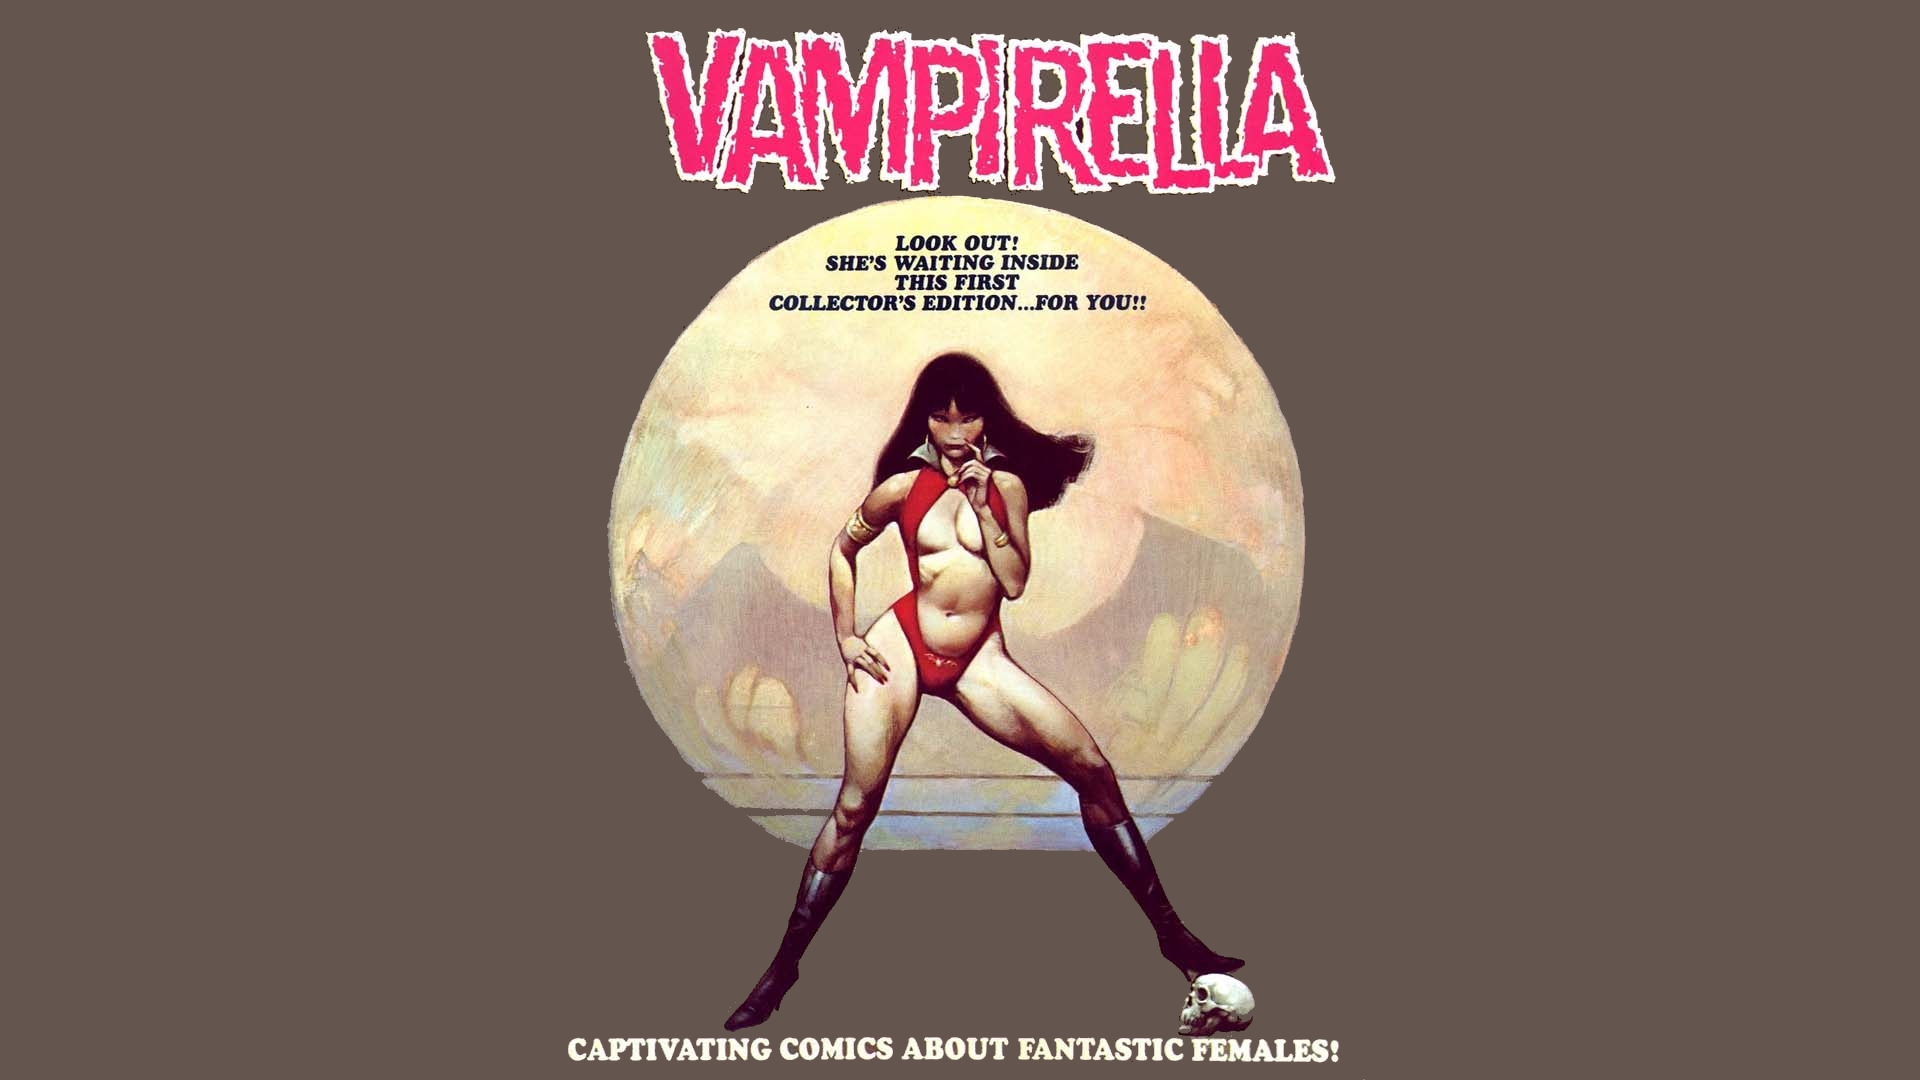 Vampirella 1920x1080